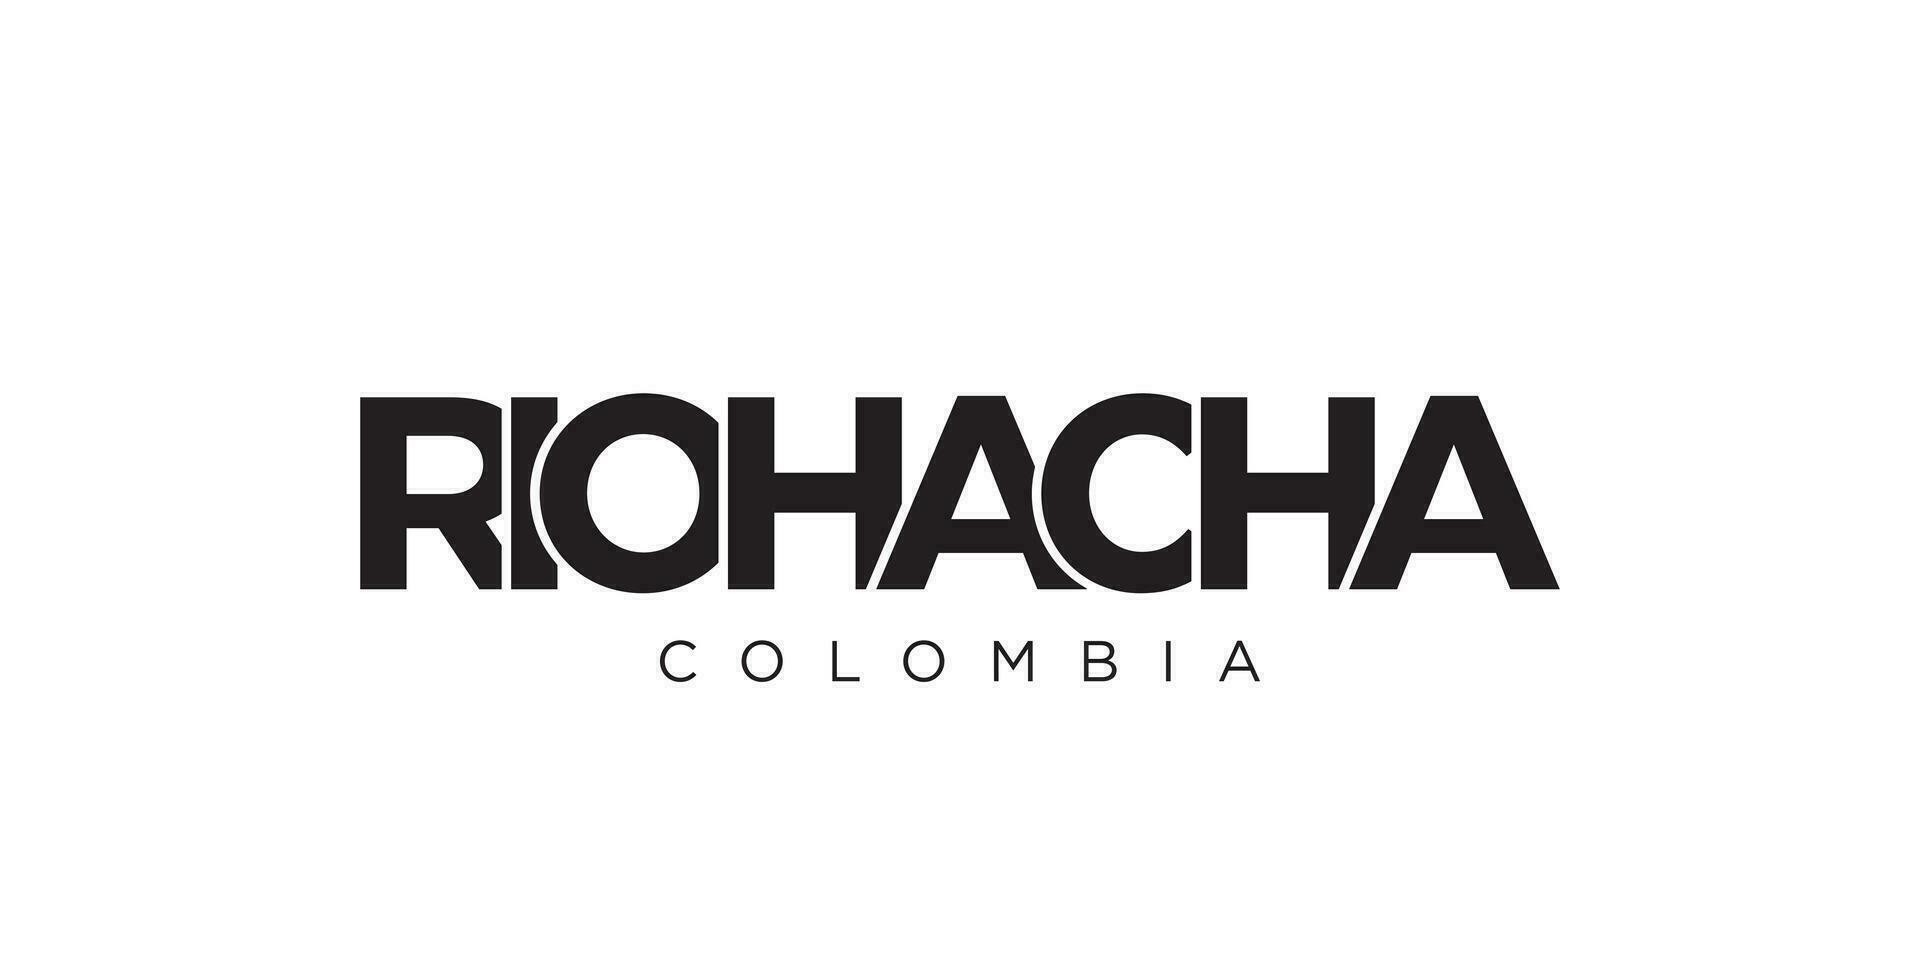 riohacha en el Colombia emblema. el diseño caracteristicas un geométrico estilo, vector ilustración con negrita tipografía en un moderno fuente. el gráfico eslogan letras.